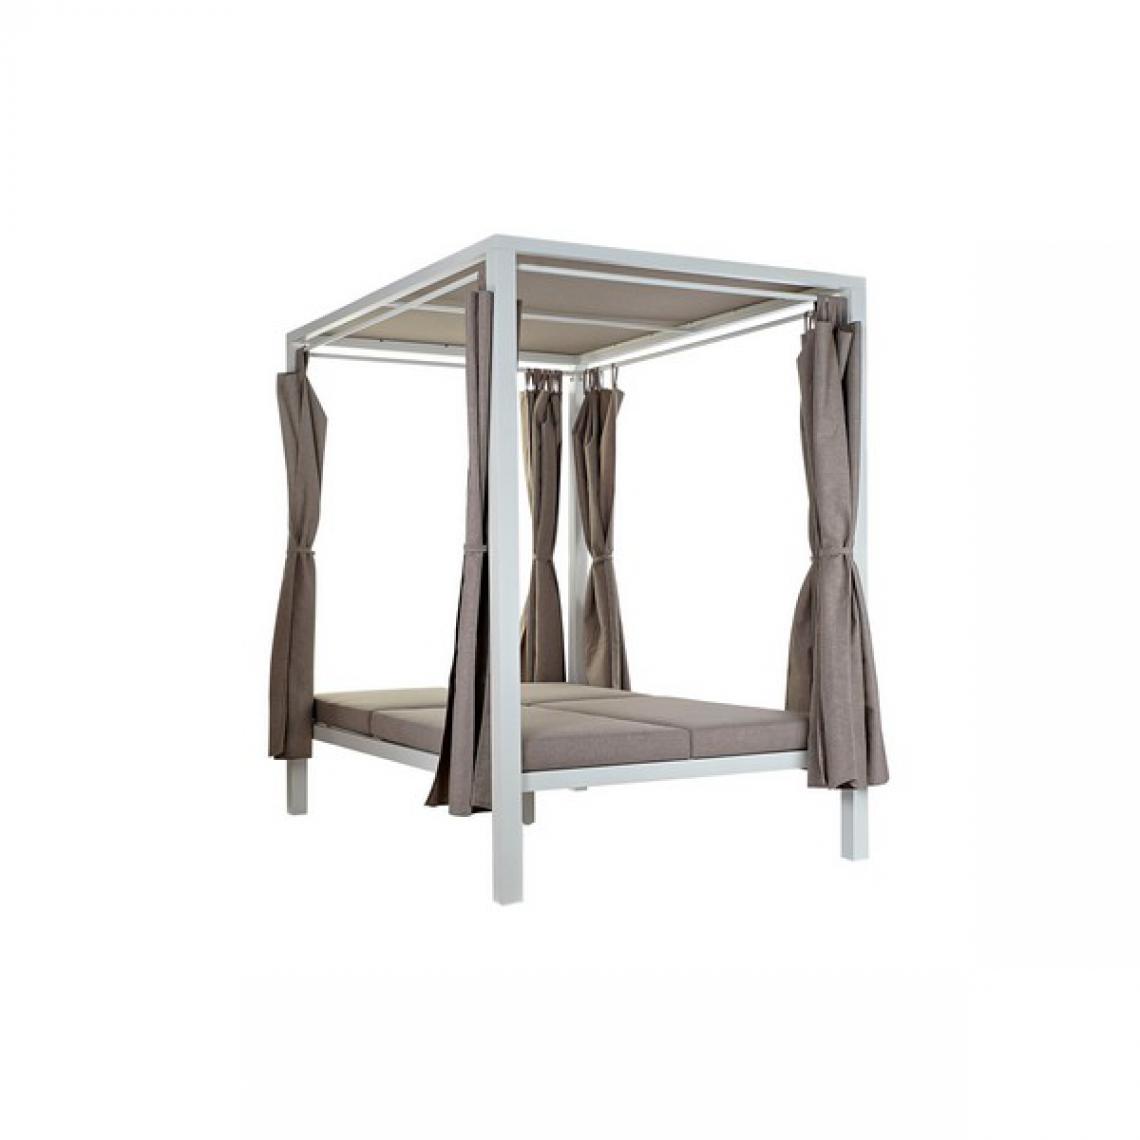 Unknown - Lit de jardin DKD Home Decor Polyester Aluminium (208 x 188 x 205 cm) - Ensembles canapés et fauteuils